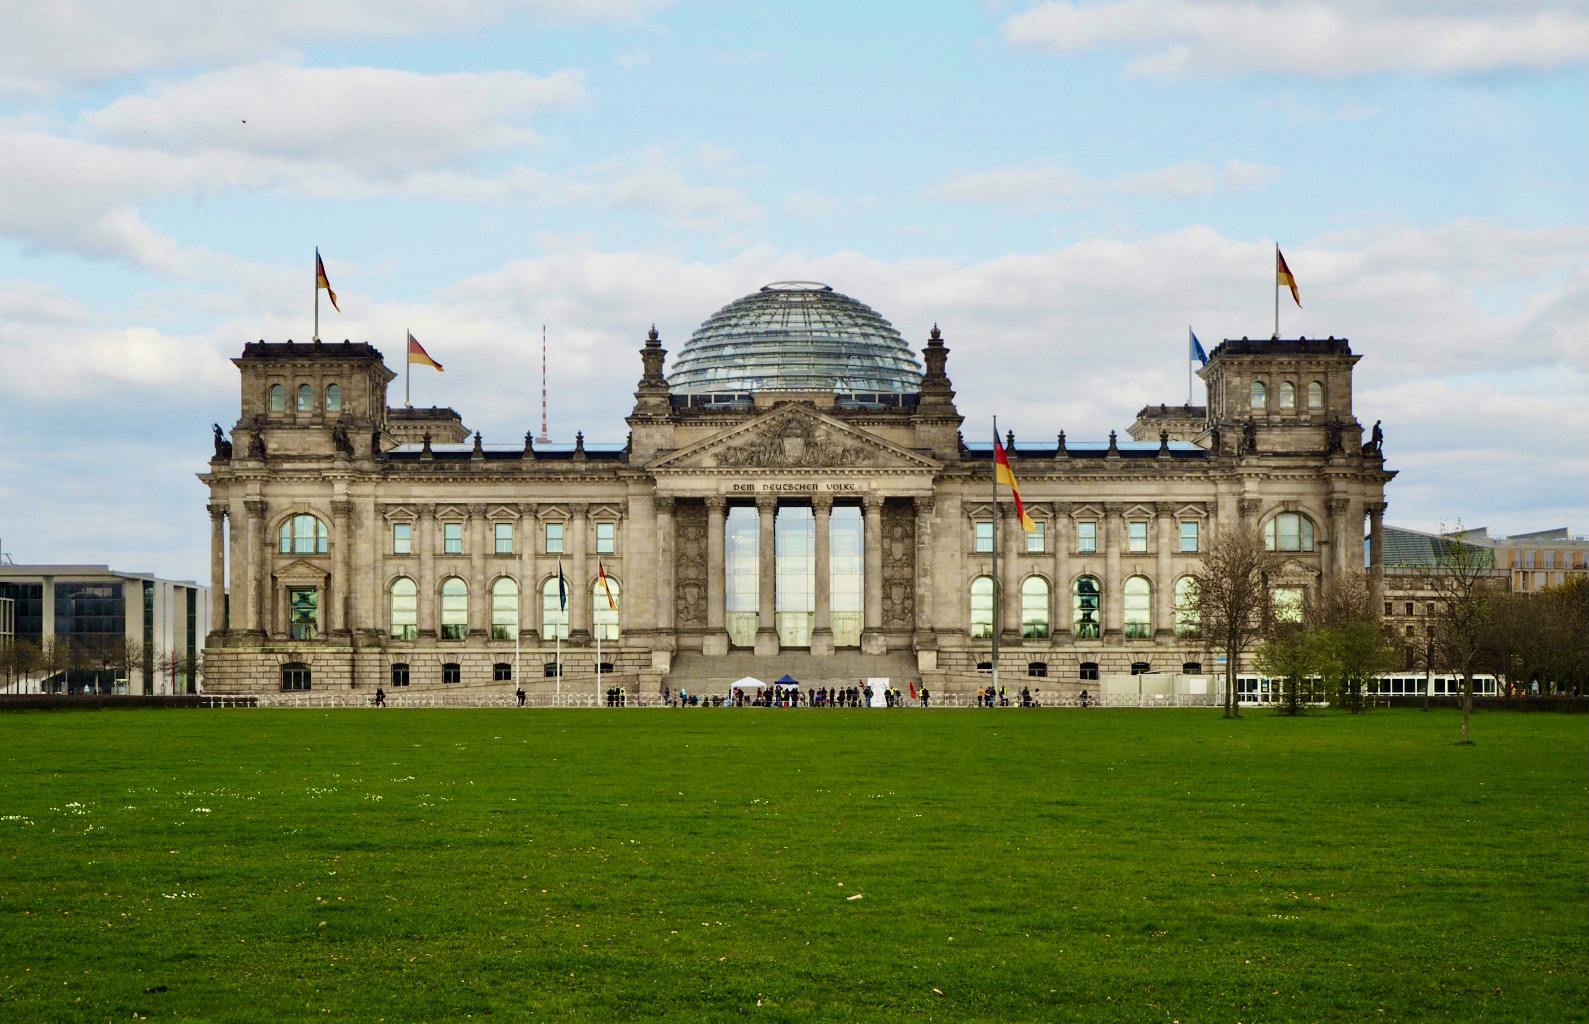 Zu sehen ist das Reichstagsgebäude in Berlin aus frontaler Sicht bei blau-bewölktem Himmel.